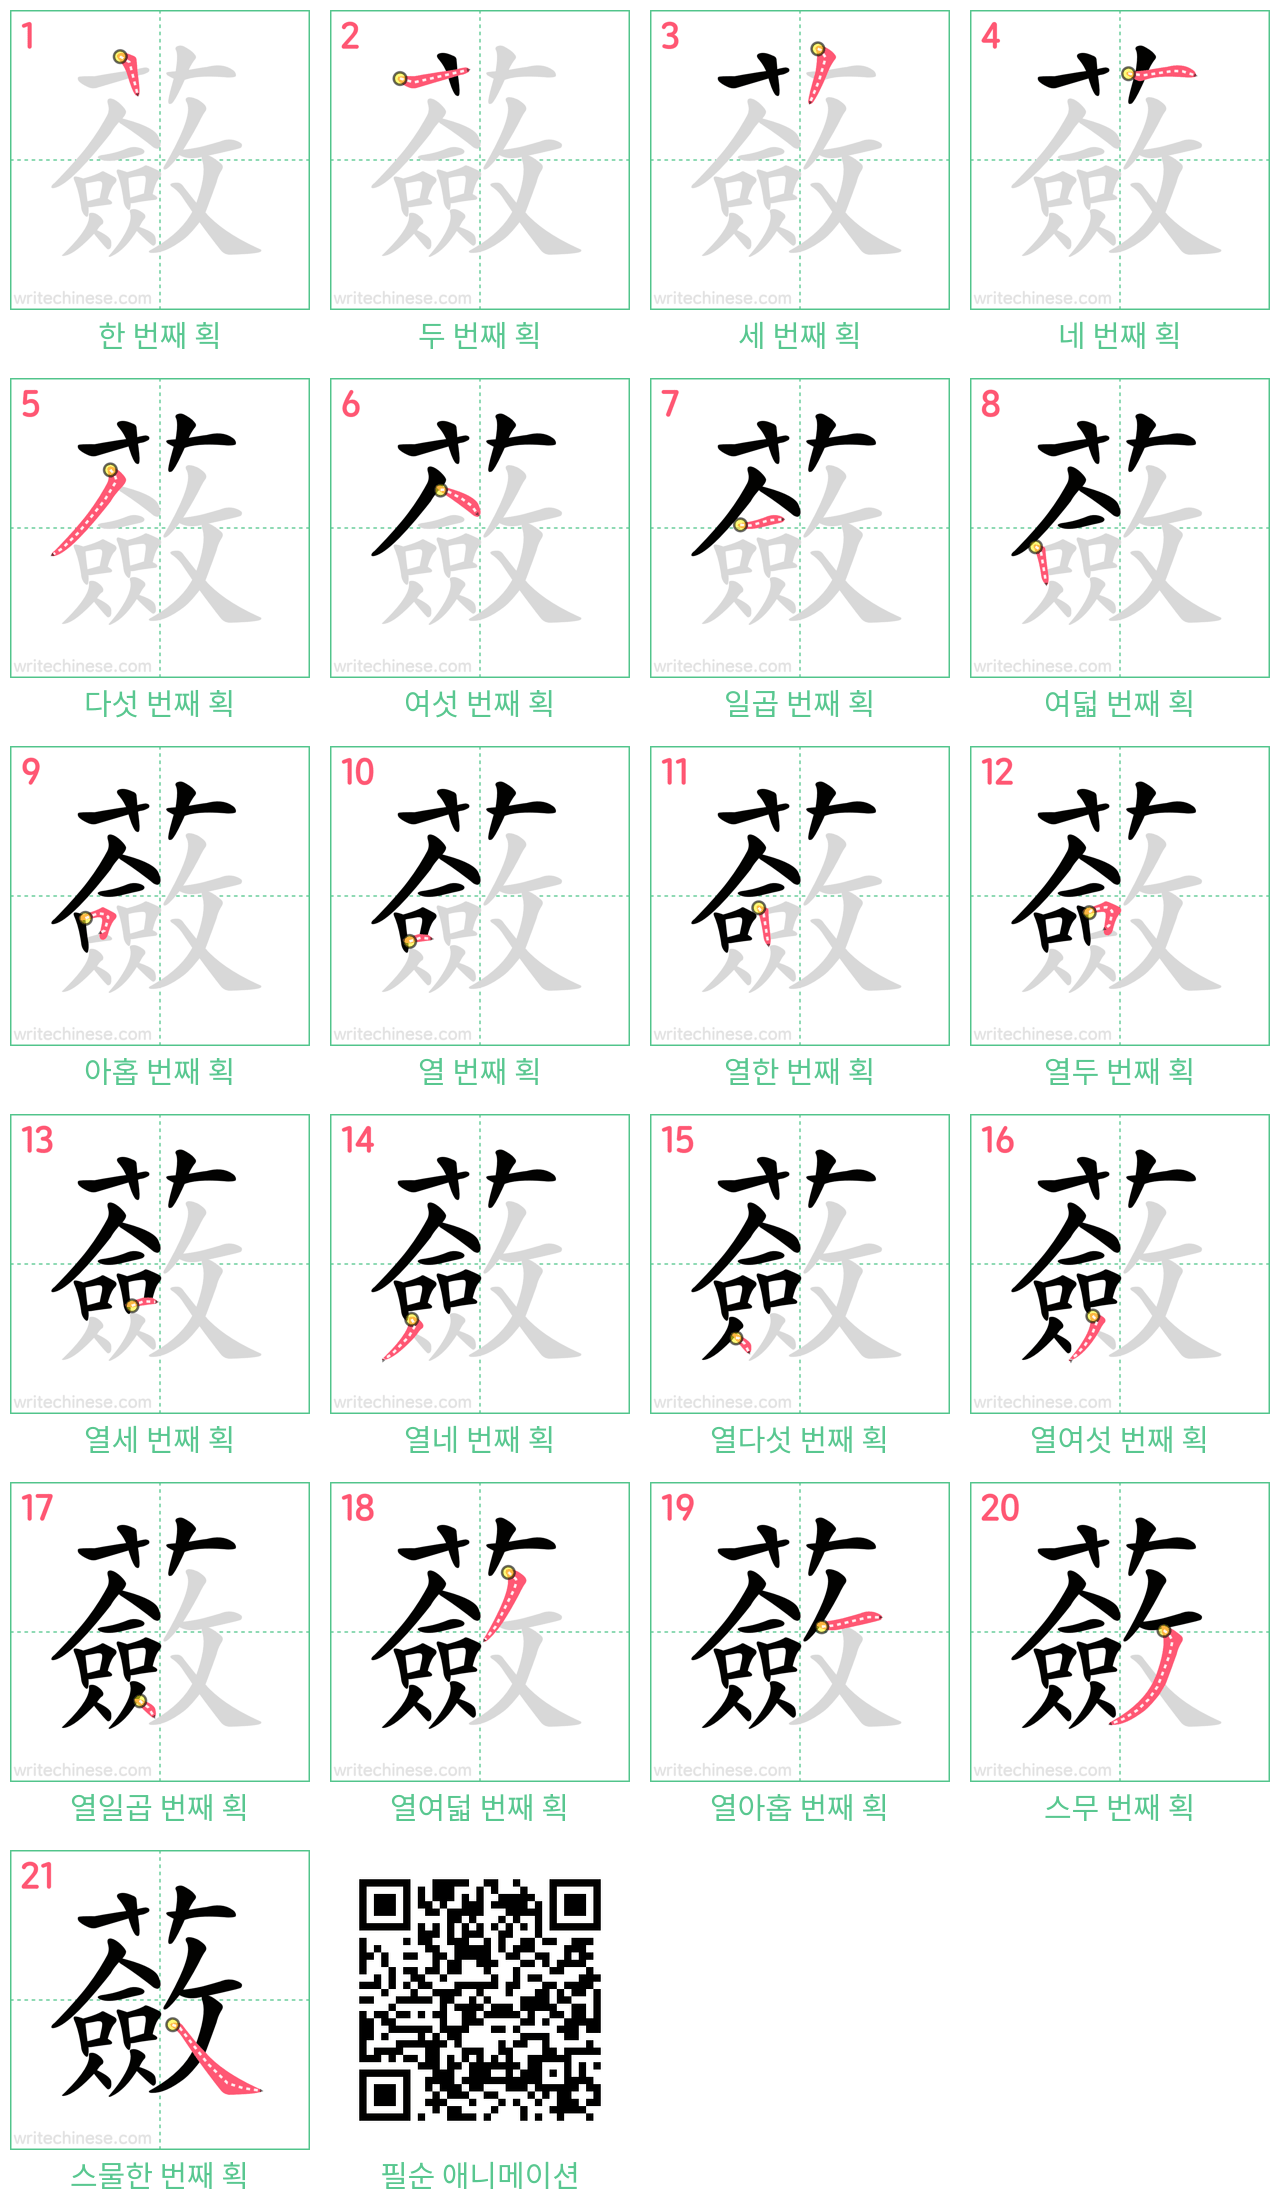 蘞 step-by-step stroke order diagrams